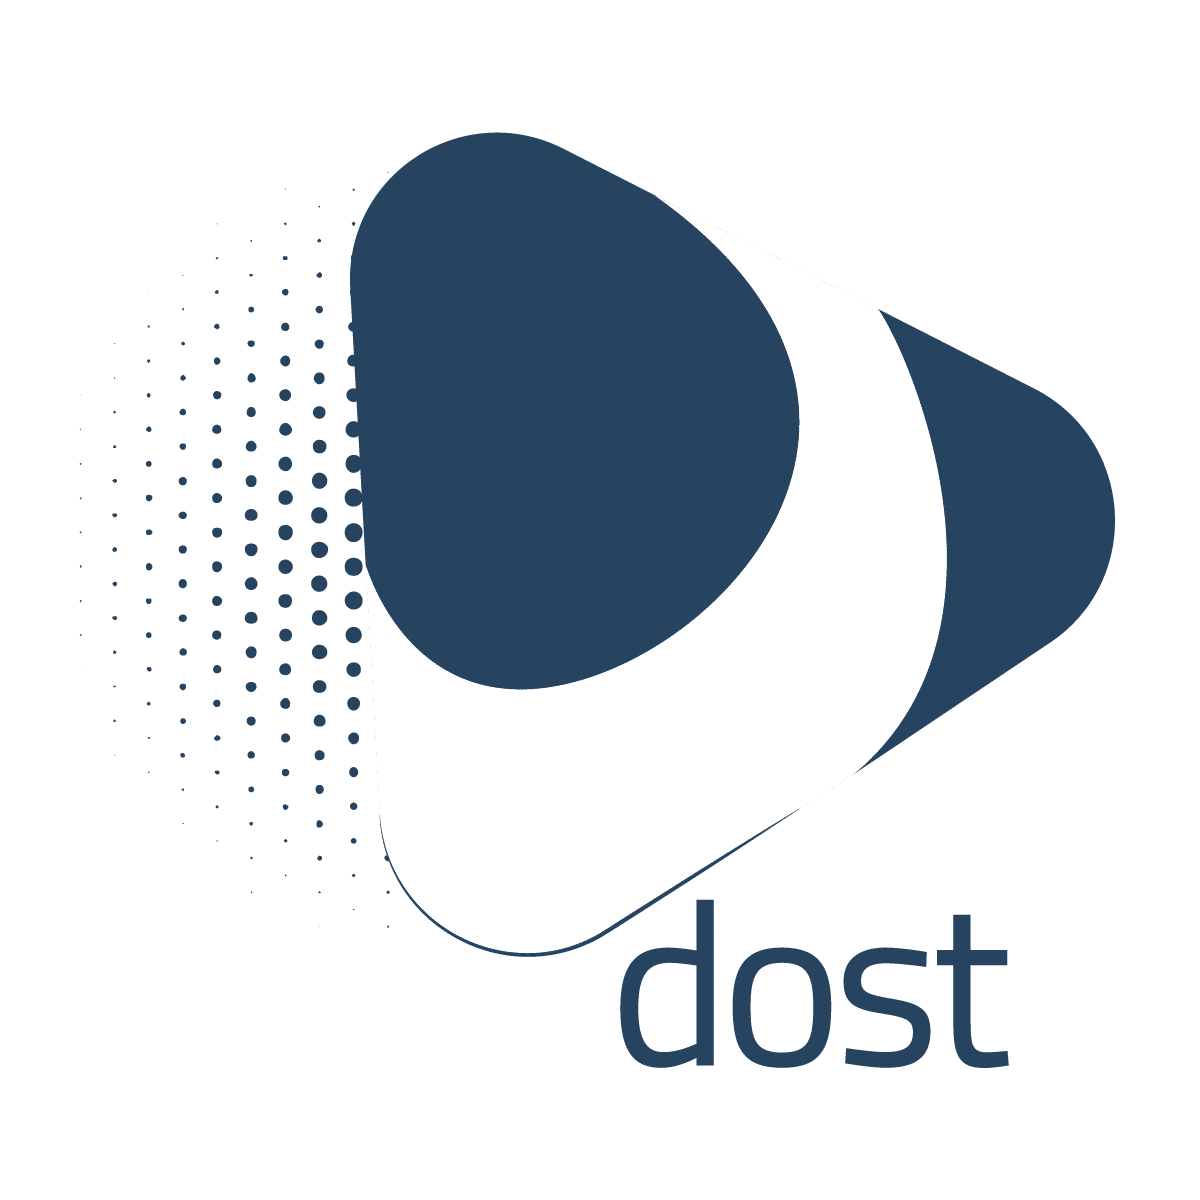 Dost, programa que trabaja de la mano para soluciones digitales